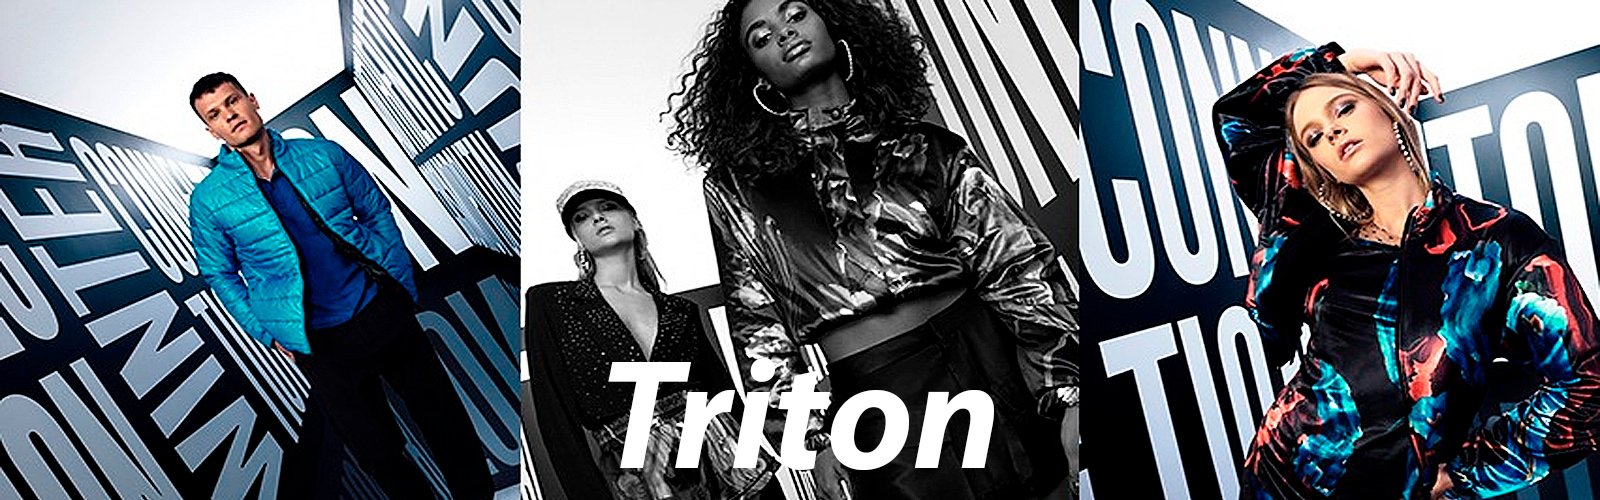 triton-1600x500-1